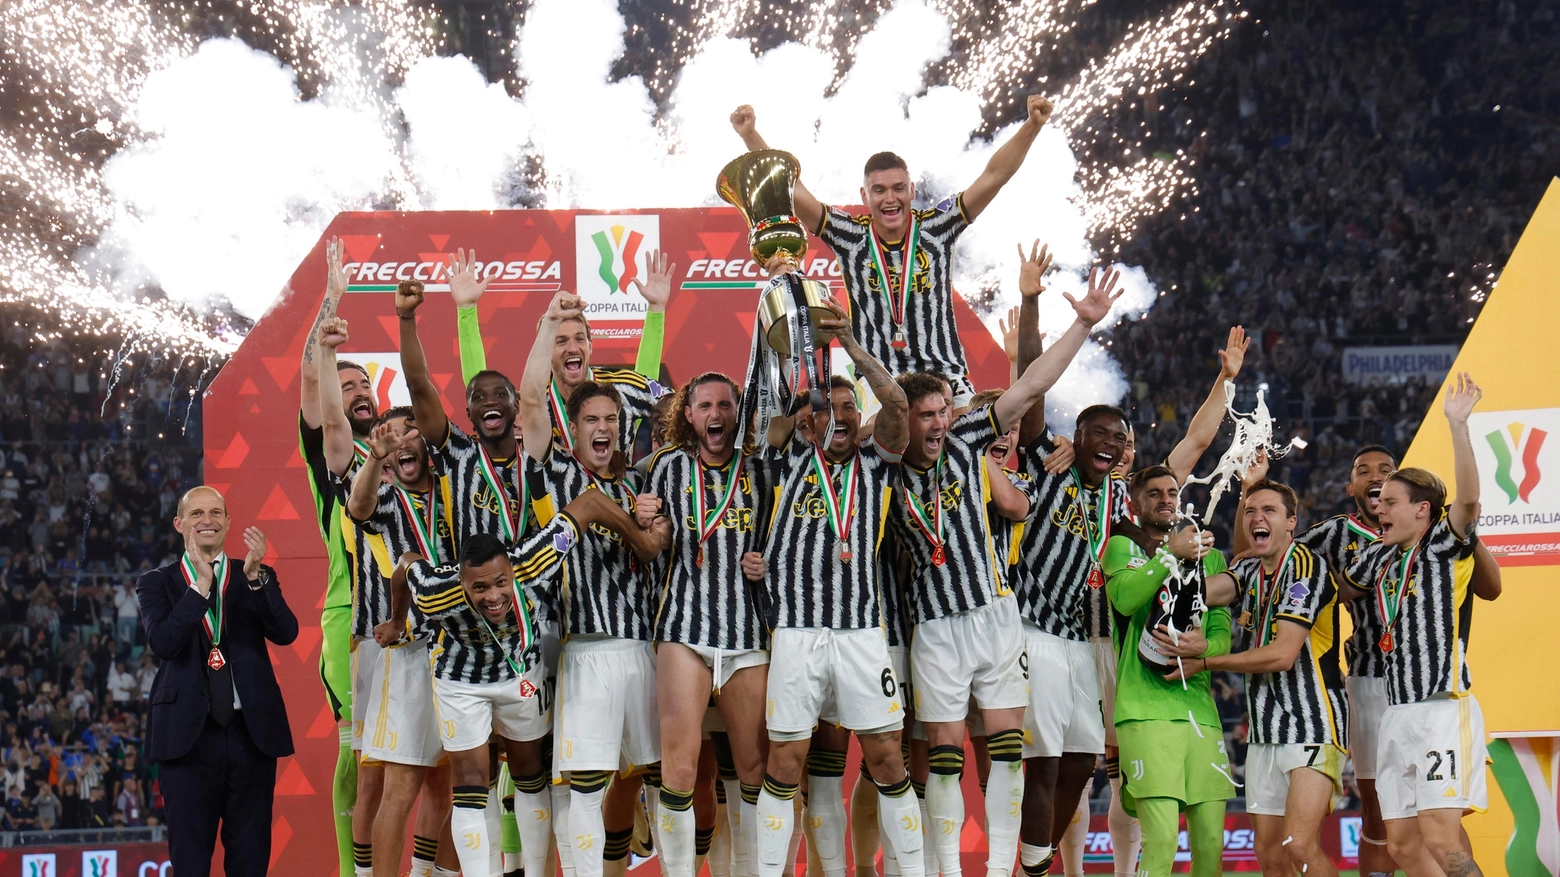 La Juventus ha vinto la Coppa Italia battendo 1-0 l'Atalanta